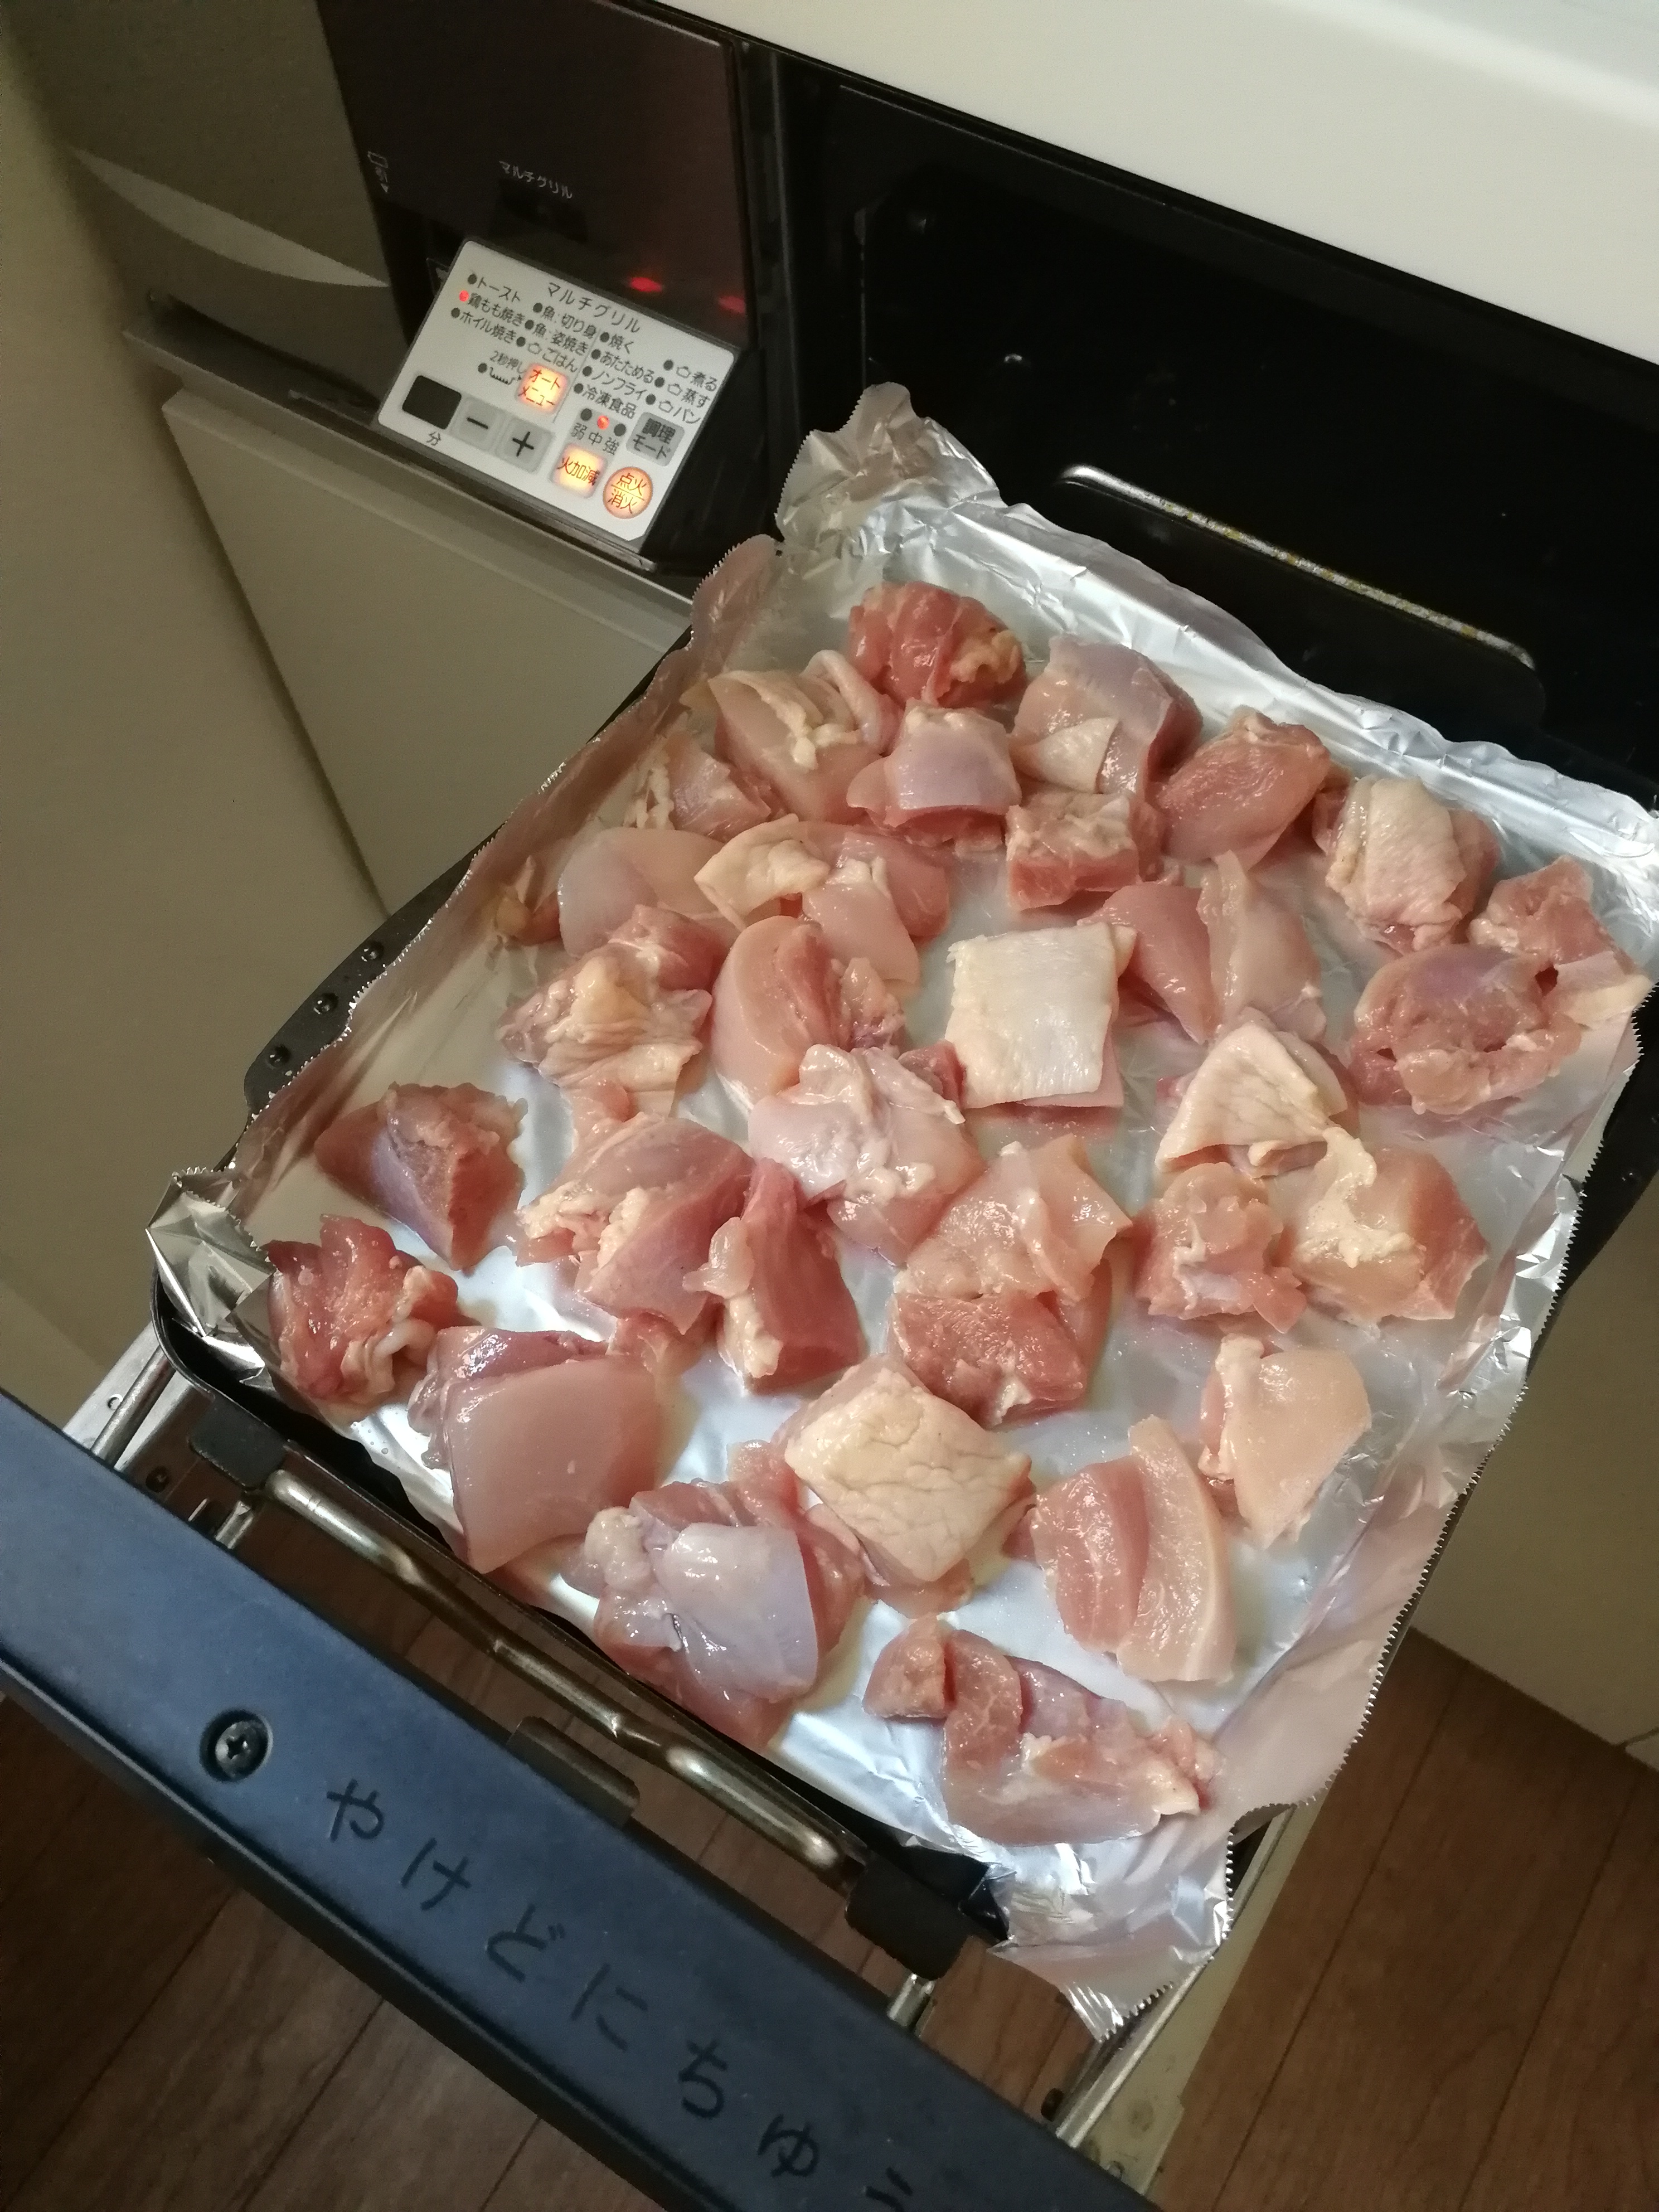 鶏もも肉は皮を剥ぎ余分な脂肪は取り除き、一口大に切る。
塩コショウをまぶし、マルチグリルのプレートに重ならないように並べ、調理モード［鶏もも焼き］で焼く。